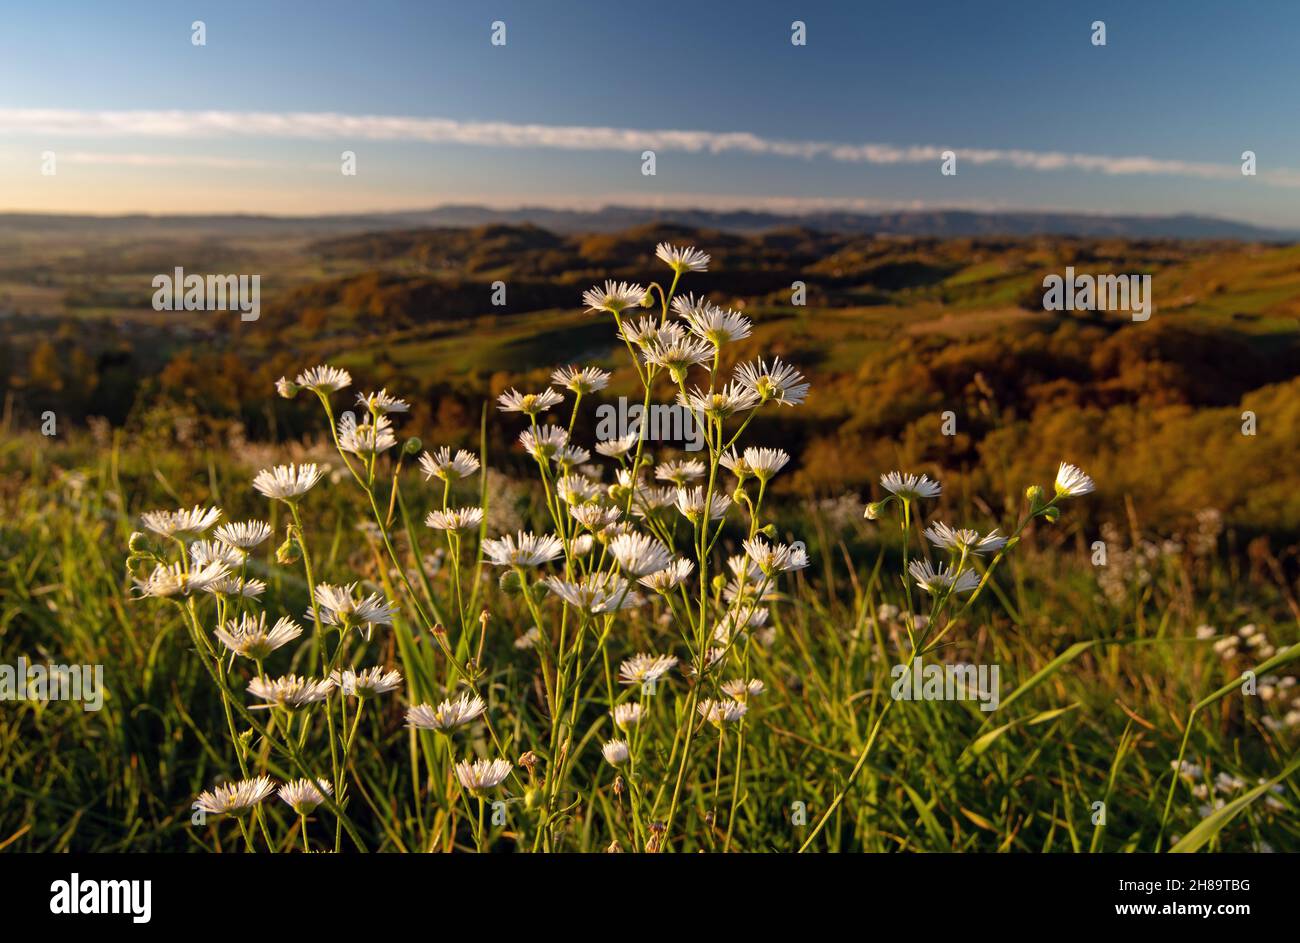 Primer plano de las flores de margarita y un hermoso paisaje en el fondo Foto de stock